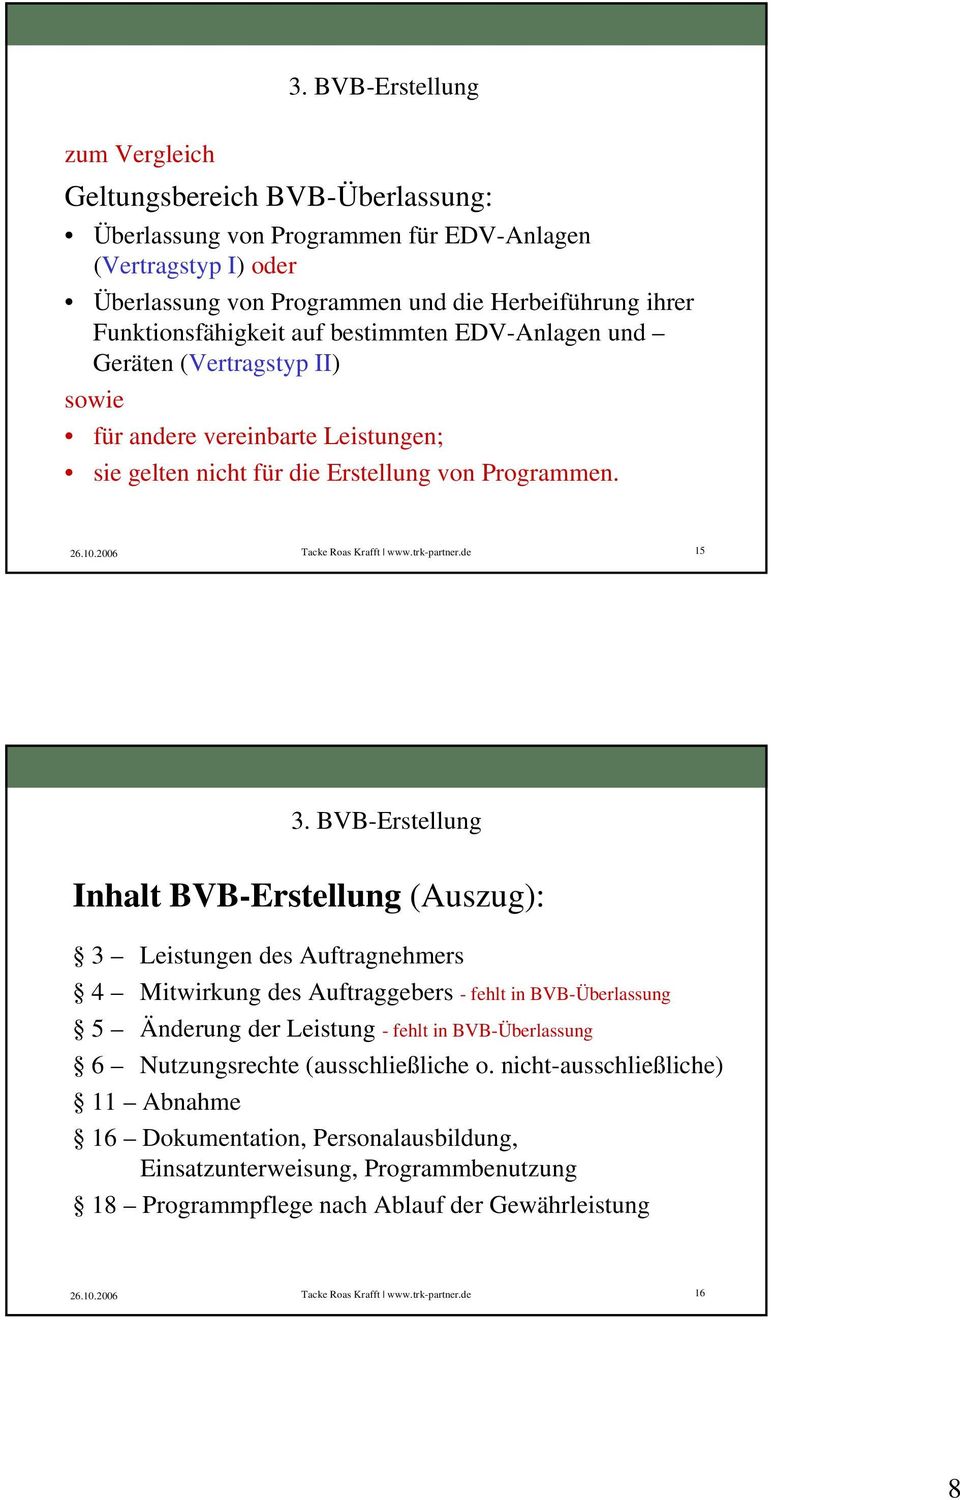 BVB-Erstellung Inhalt BVB-Erstellung (Auszug): 3 Leistungen des Auftragnehmers 4 Mitwirkung des Auftraggebers - fehlt in BVB-Überlassung 5 Änderung der Leistung - fehlt in